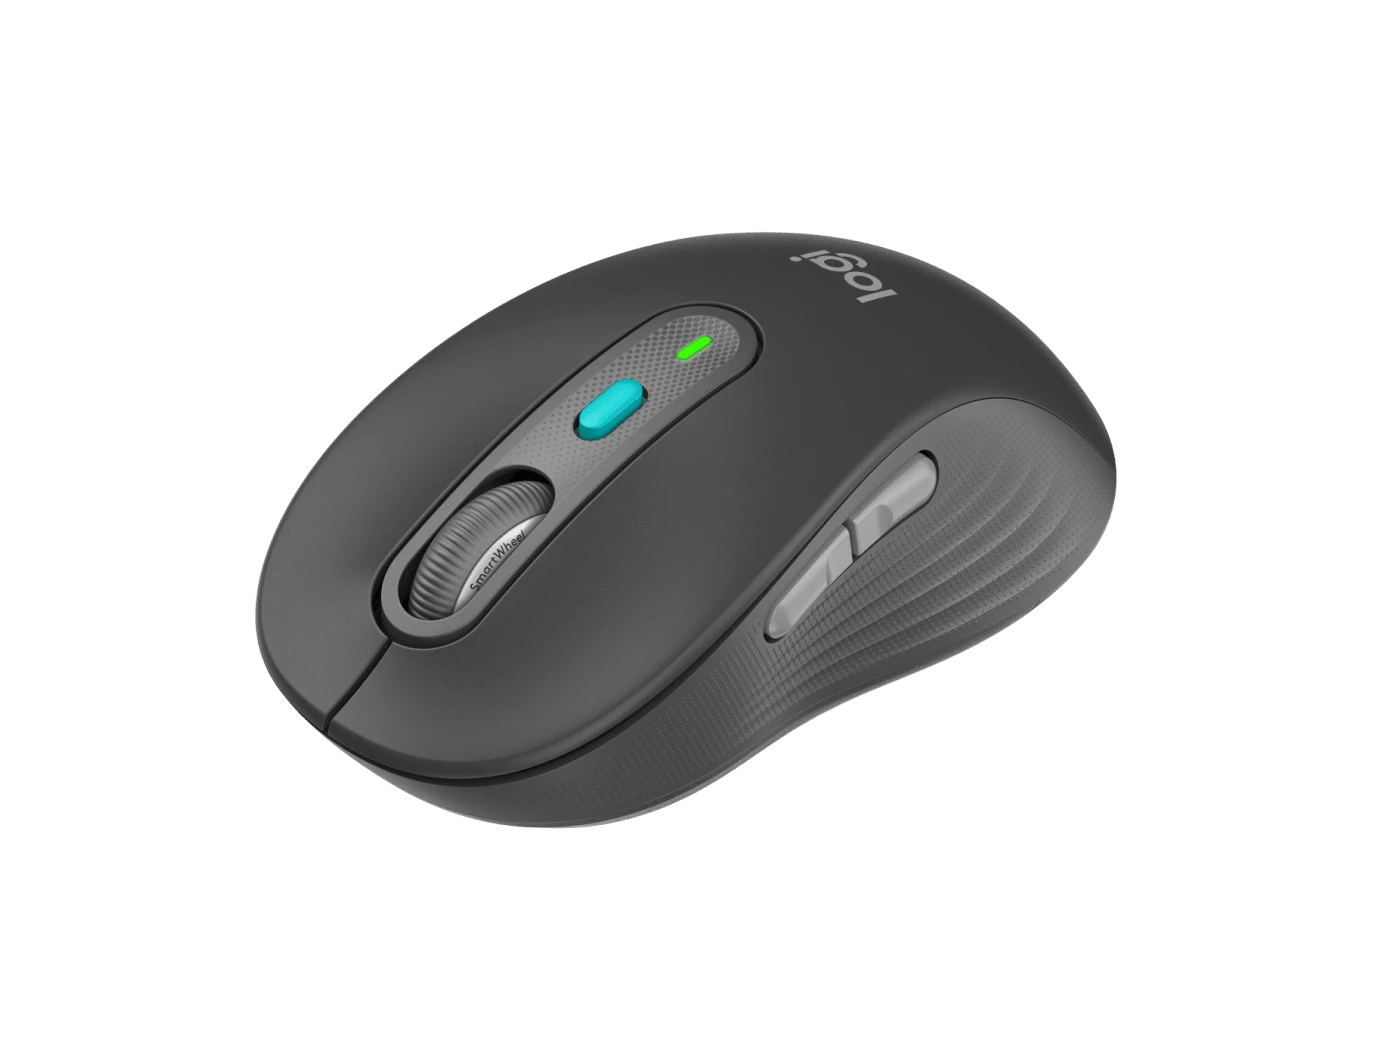 Logitech випустила бездротову мишу з кнопкою для виклику ШІ